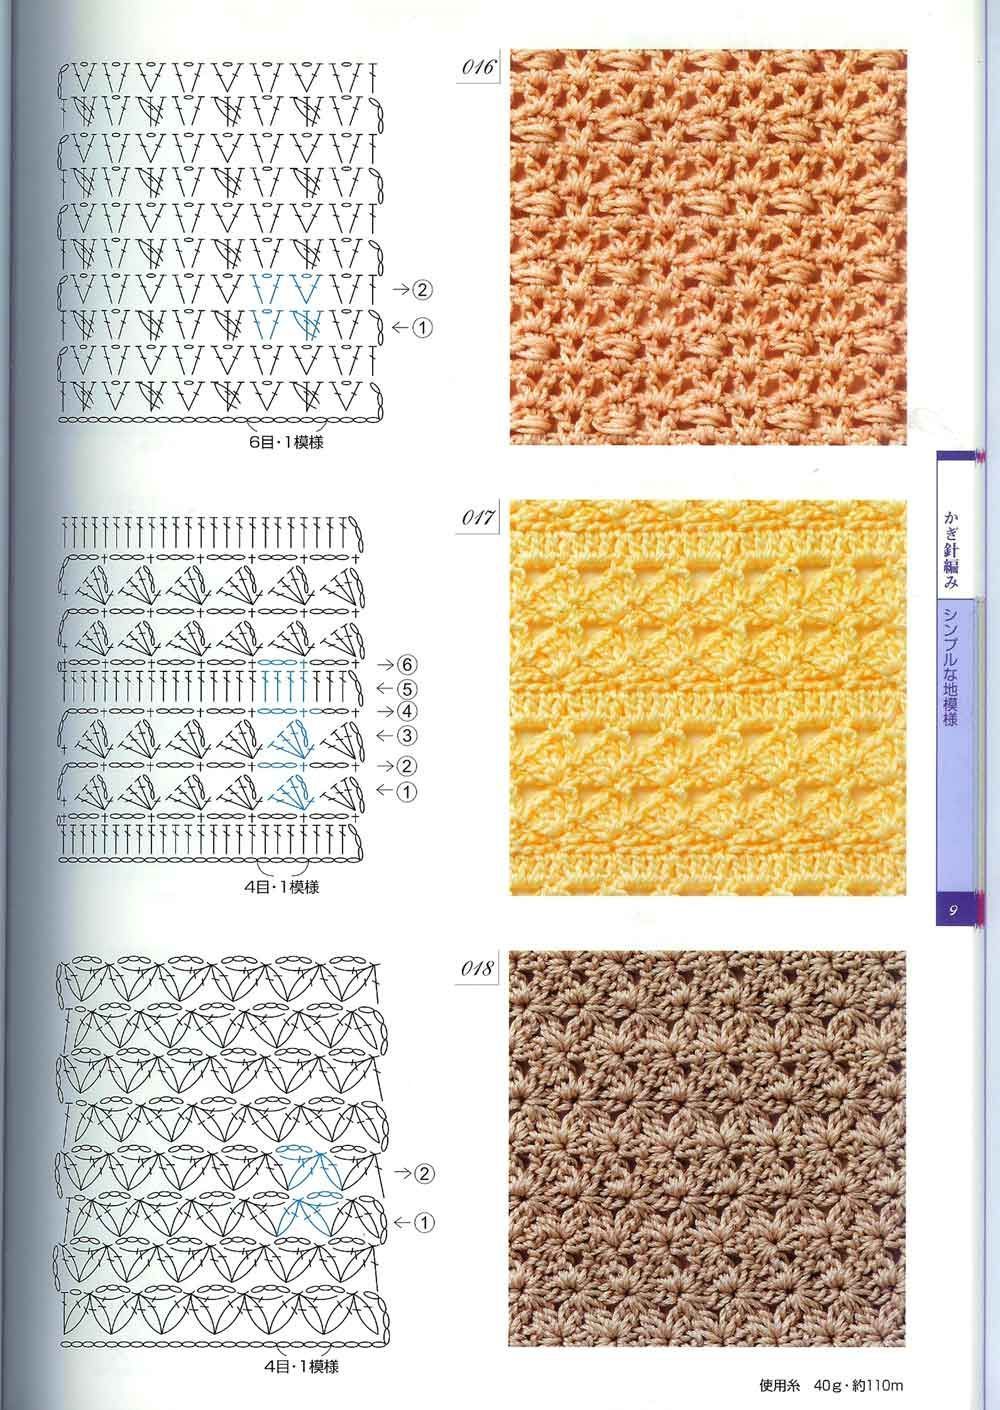 patrones y tejidos gratis : puntos crochet